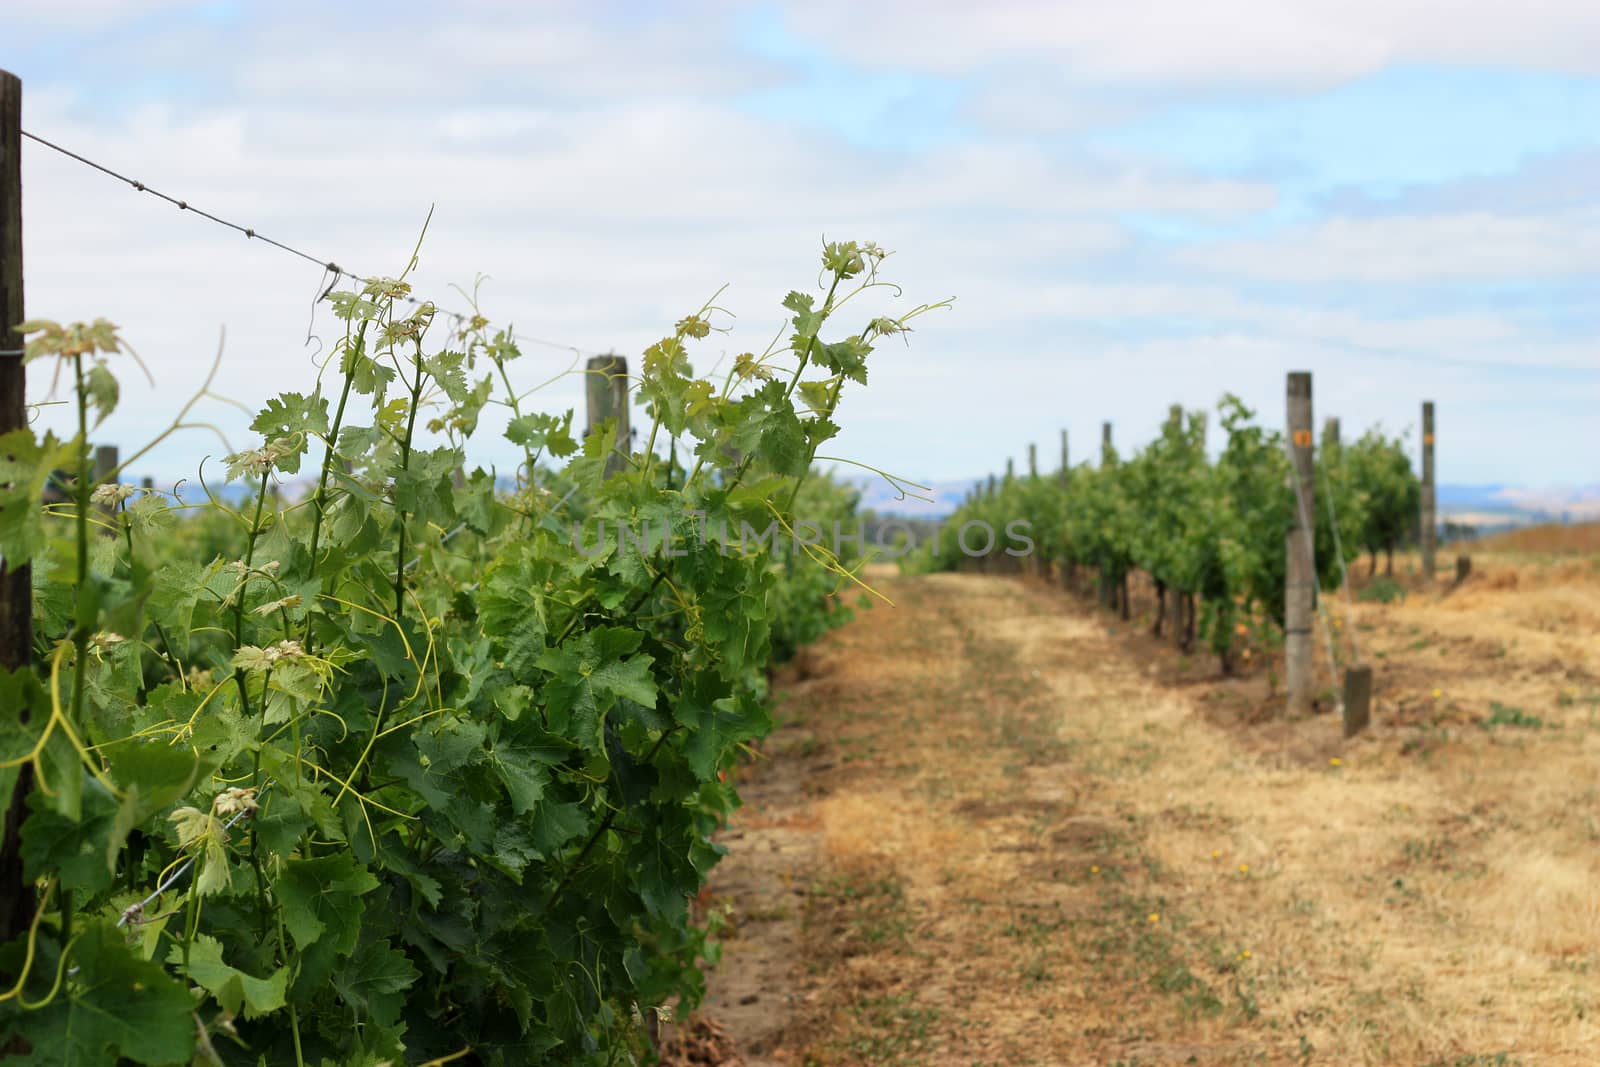 Scene of grape vineyard in Napa Valley